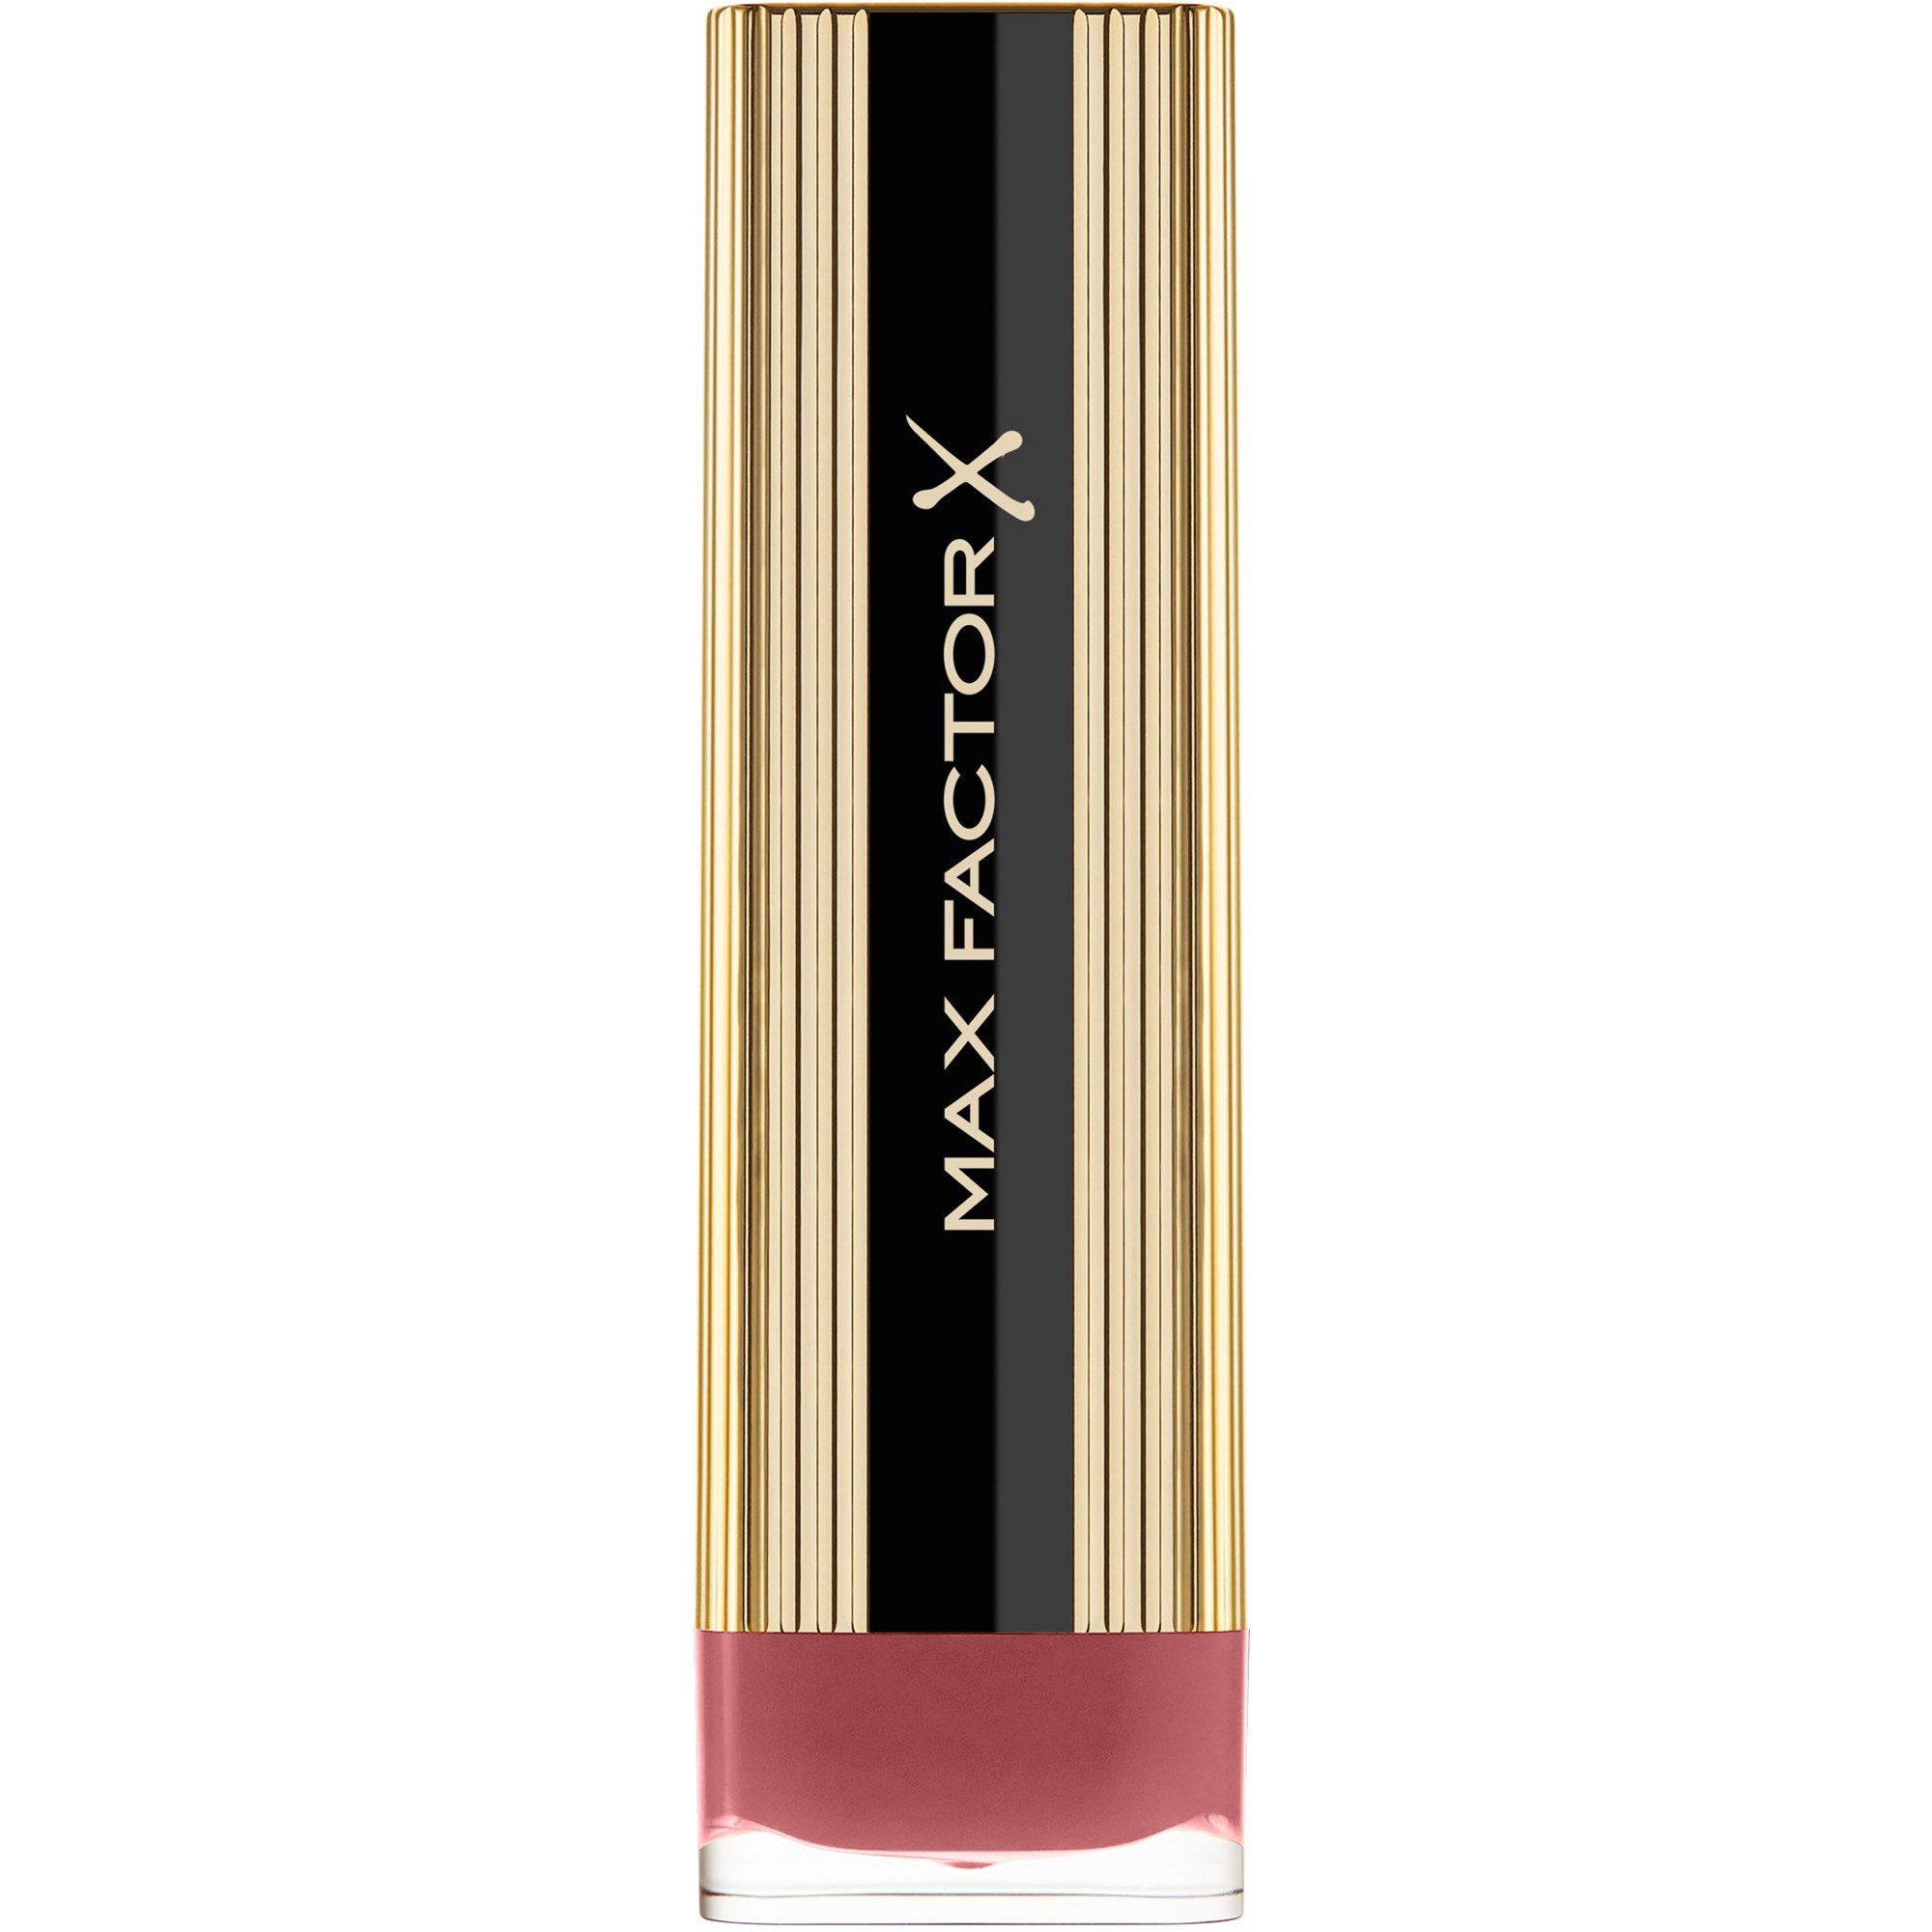 Bilde av Max Factor Colour Elixir Lipstick 010 Toasted Almond